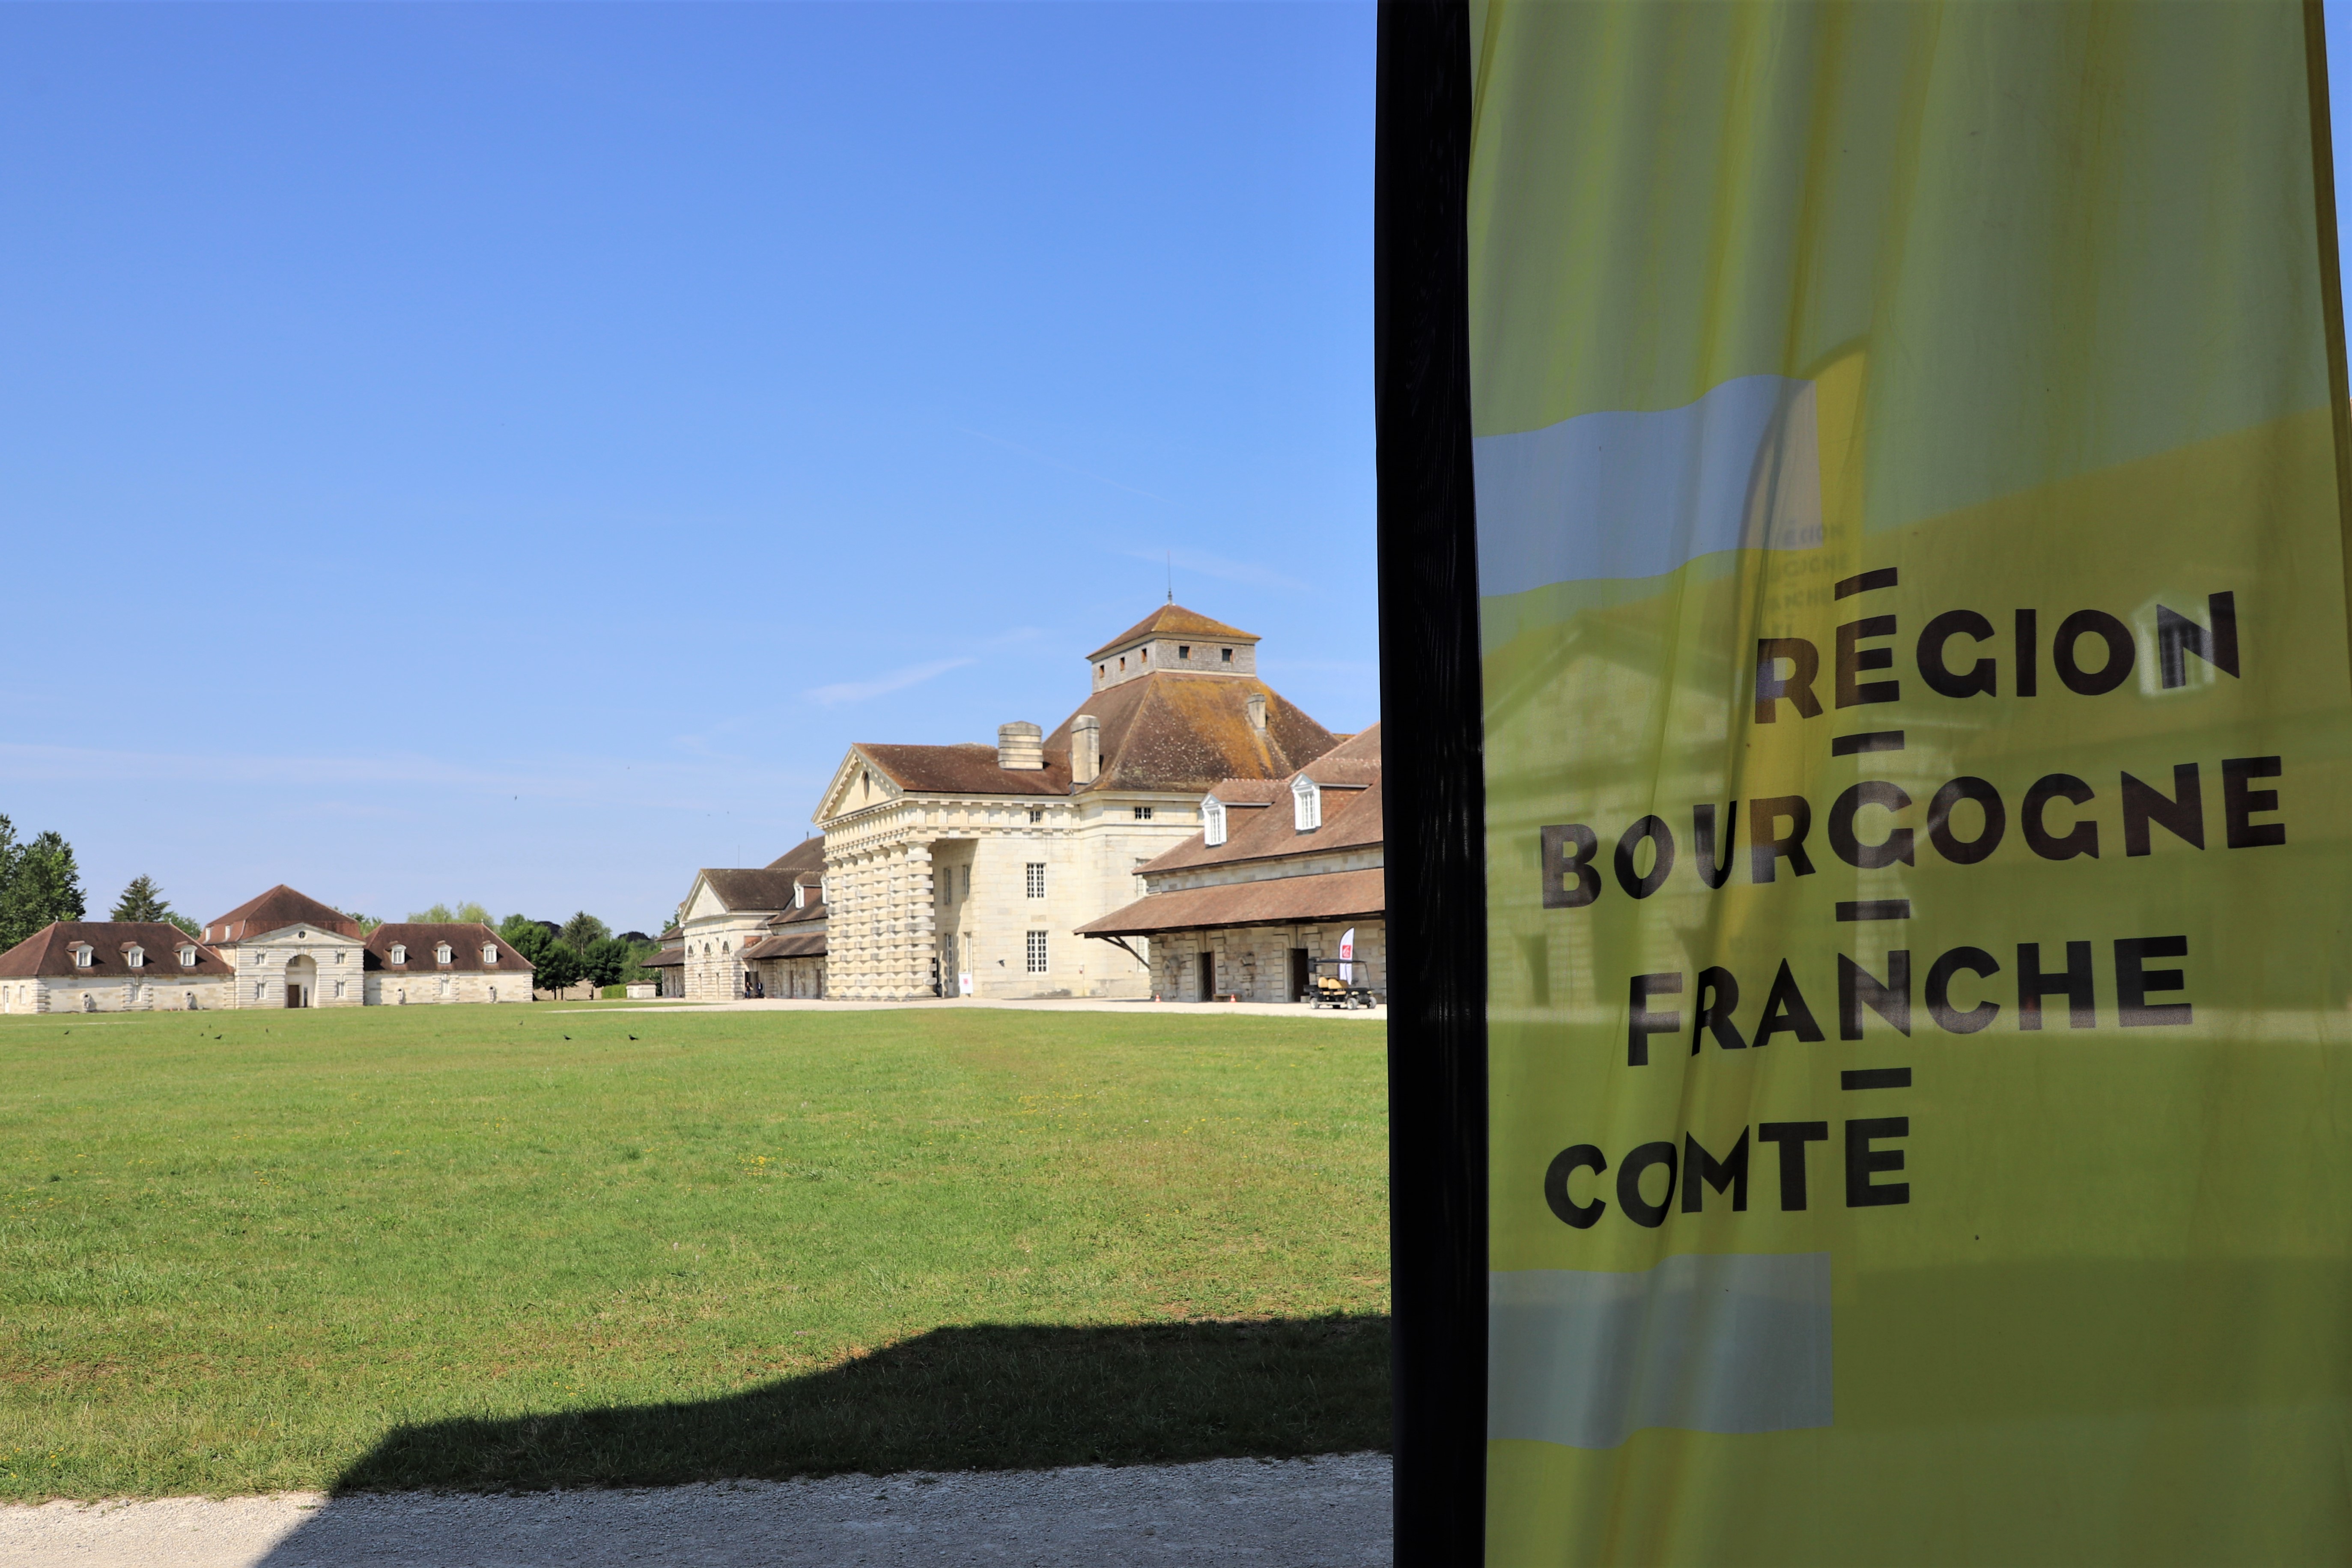 Saline royale d'Arc-et-Senans, inscrite au patrimoine mondial de l’UNESCO depuis 1982 - Photo Région Bourgogne-Franche-Comté Christophe Bidal